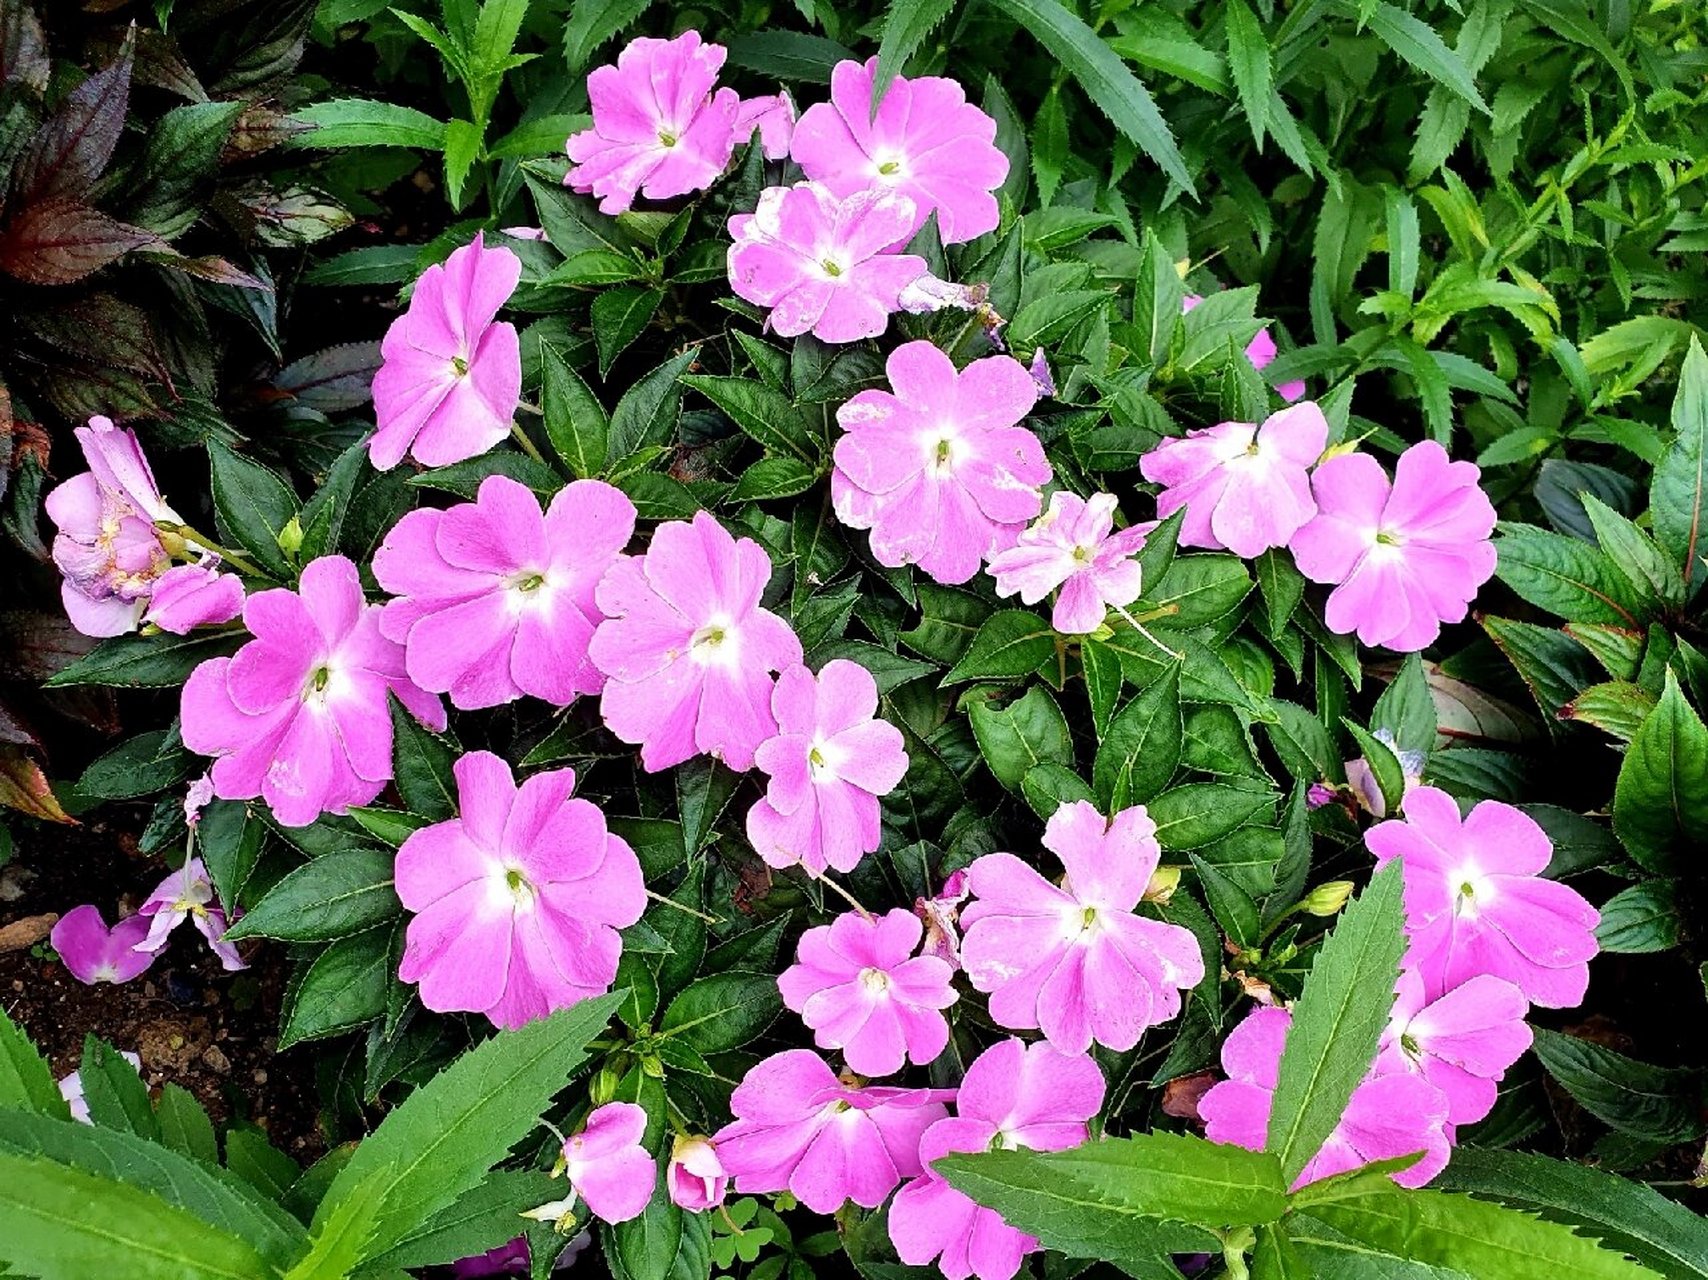 新几内亚凤仙花 94别名五彩凤仙花,绿化带种了很多,颜色鲜艳,花期